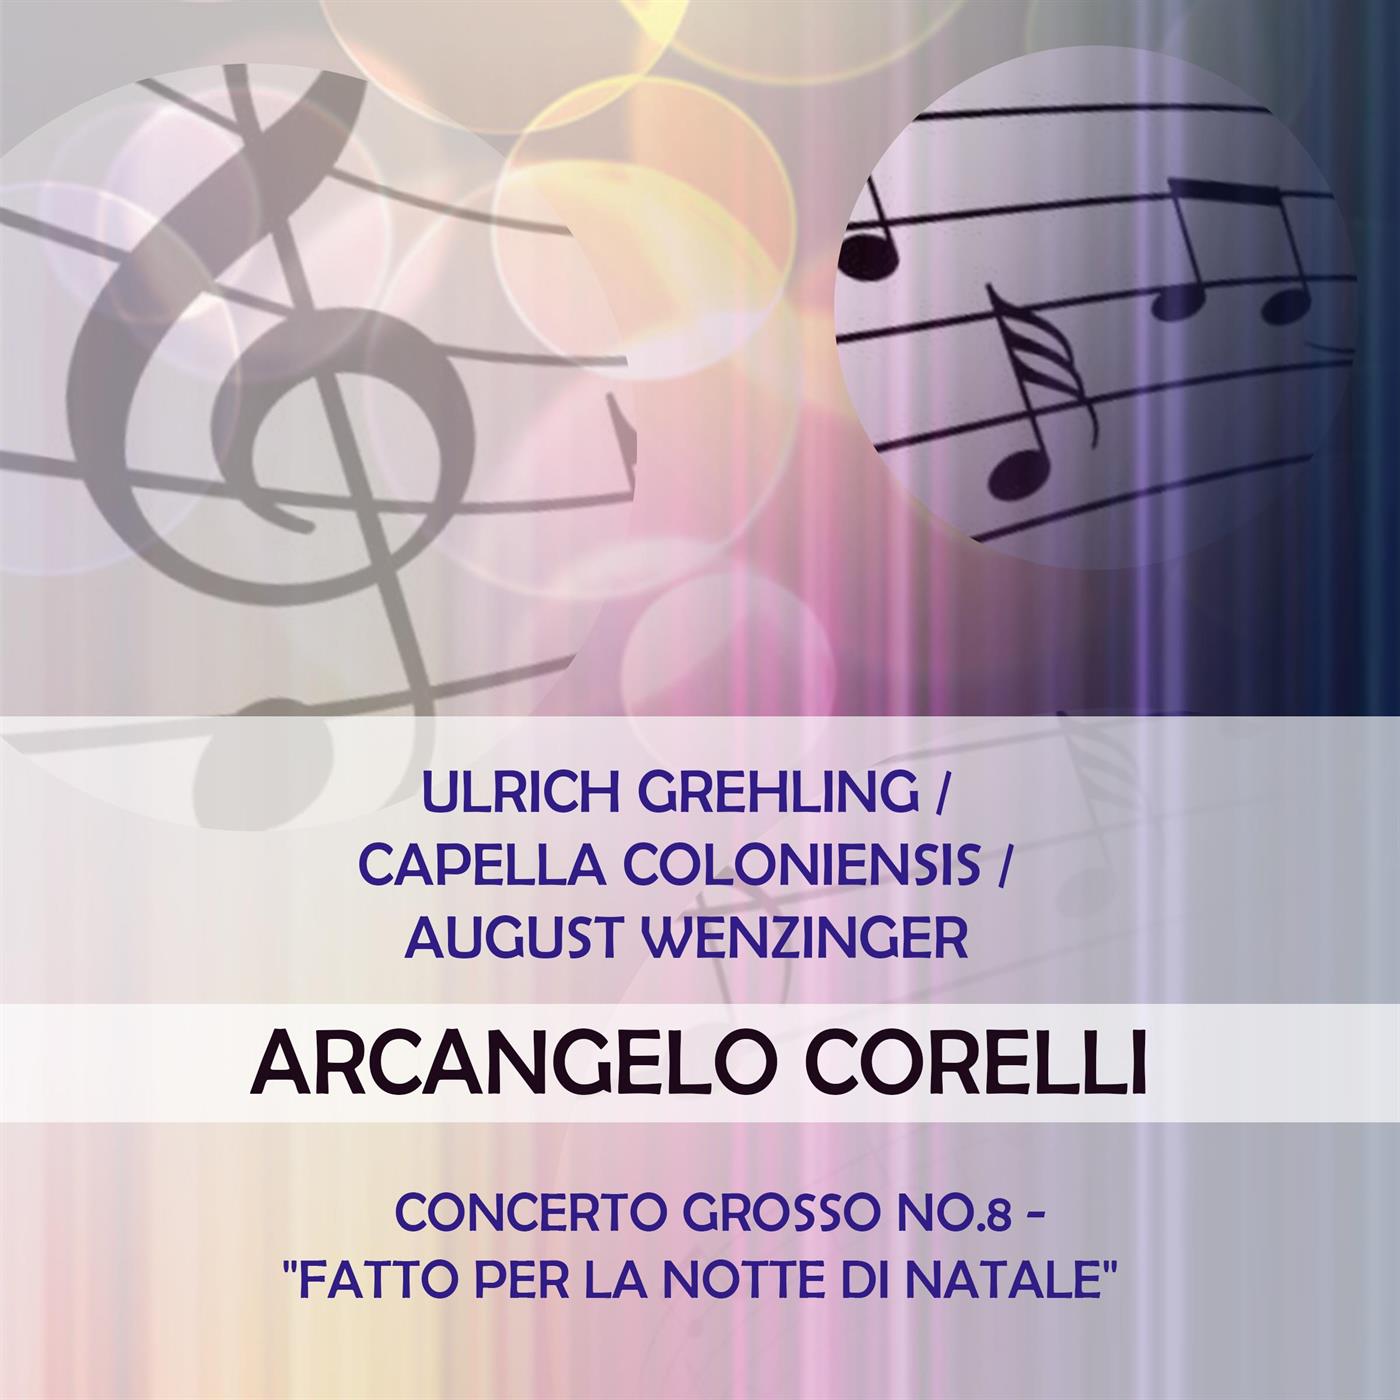 Ulrich Grehling / Capella Coloniensis / August Wenzinger play: Arcangelo Corelli: Concerto grosso No.8 - "fatto per la notte di Natale"